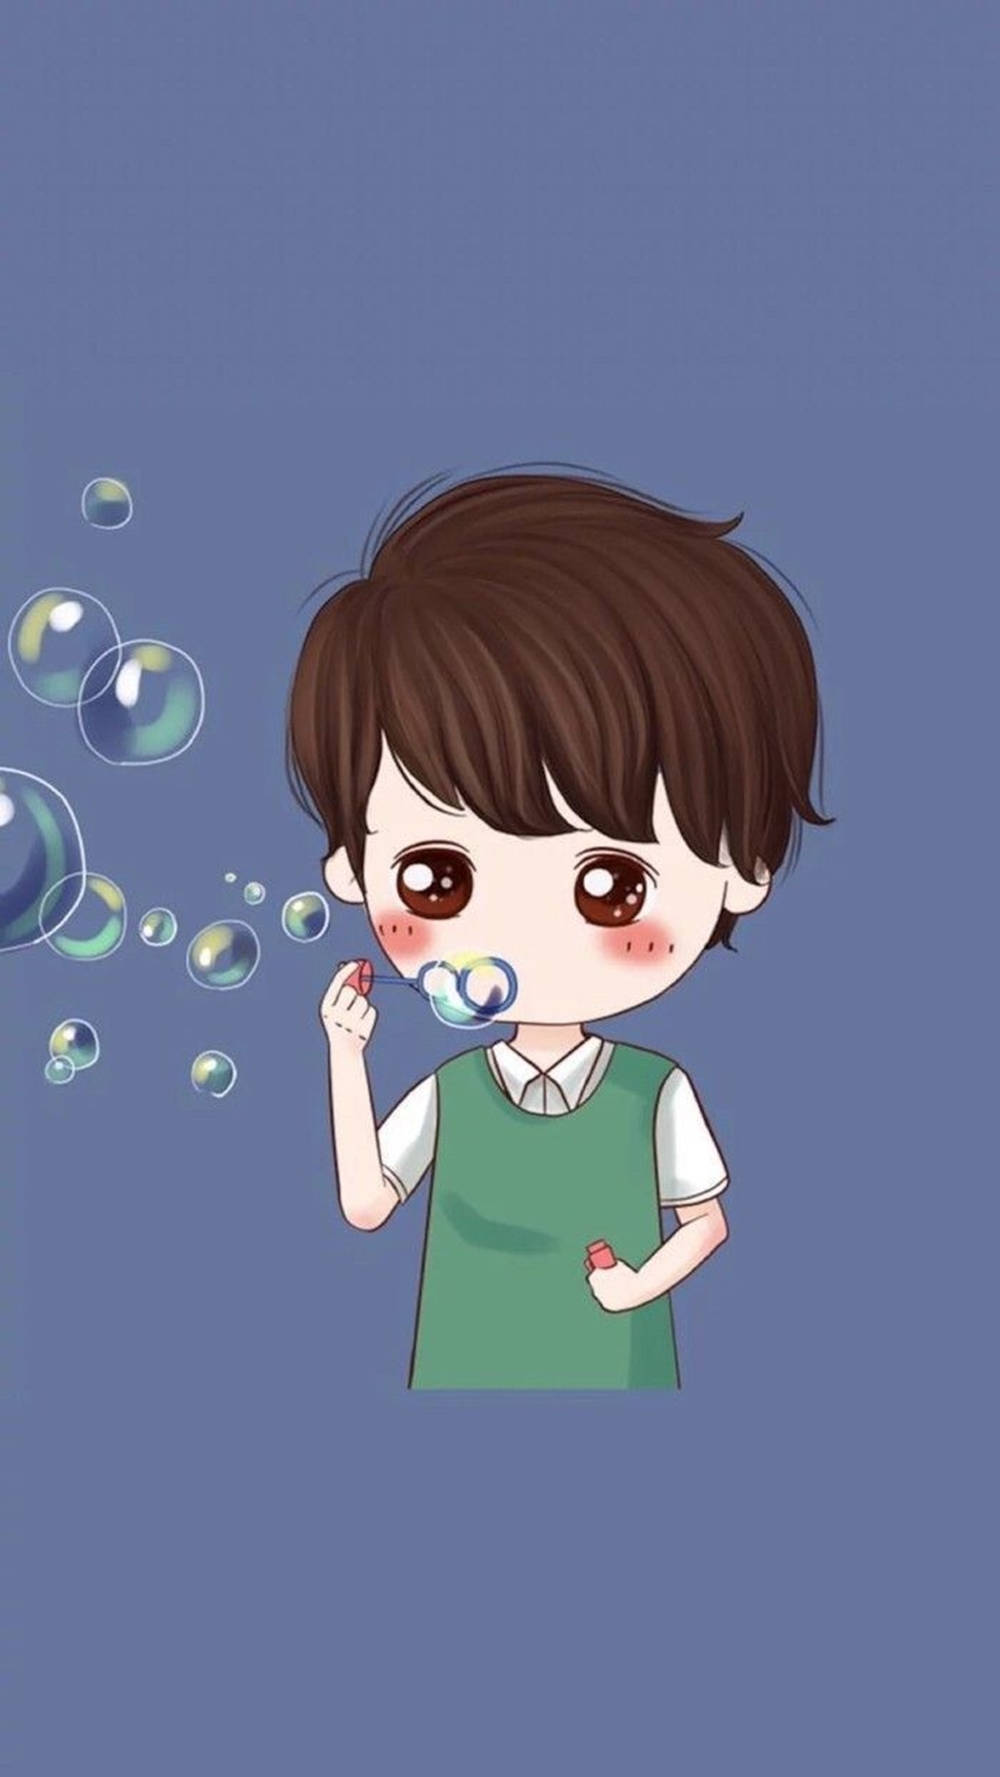 Cute Boy Cartoon Blowing Bubbles Wallpaper